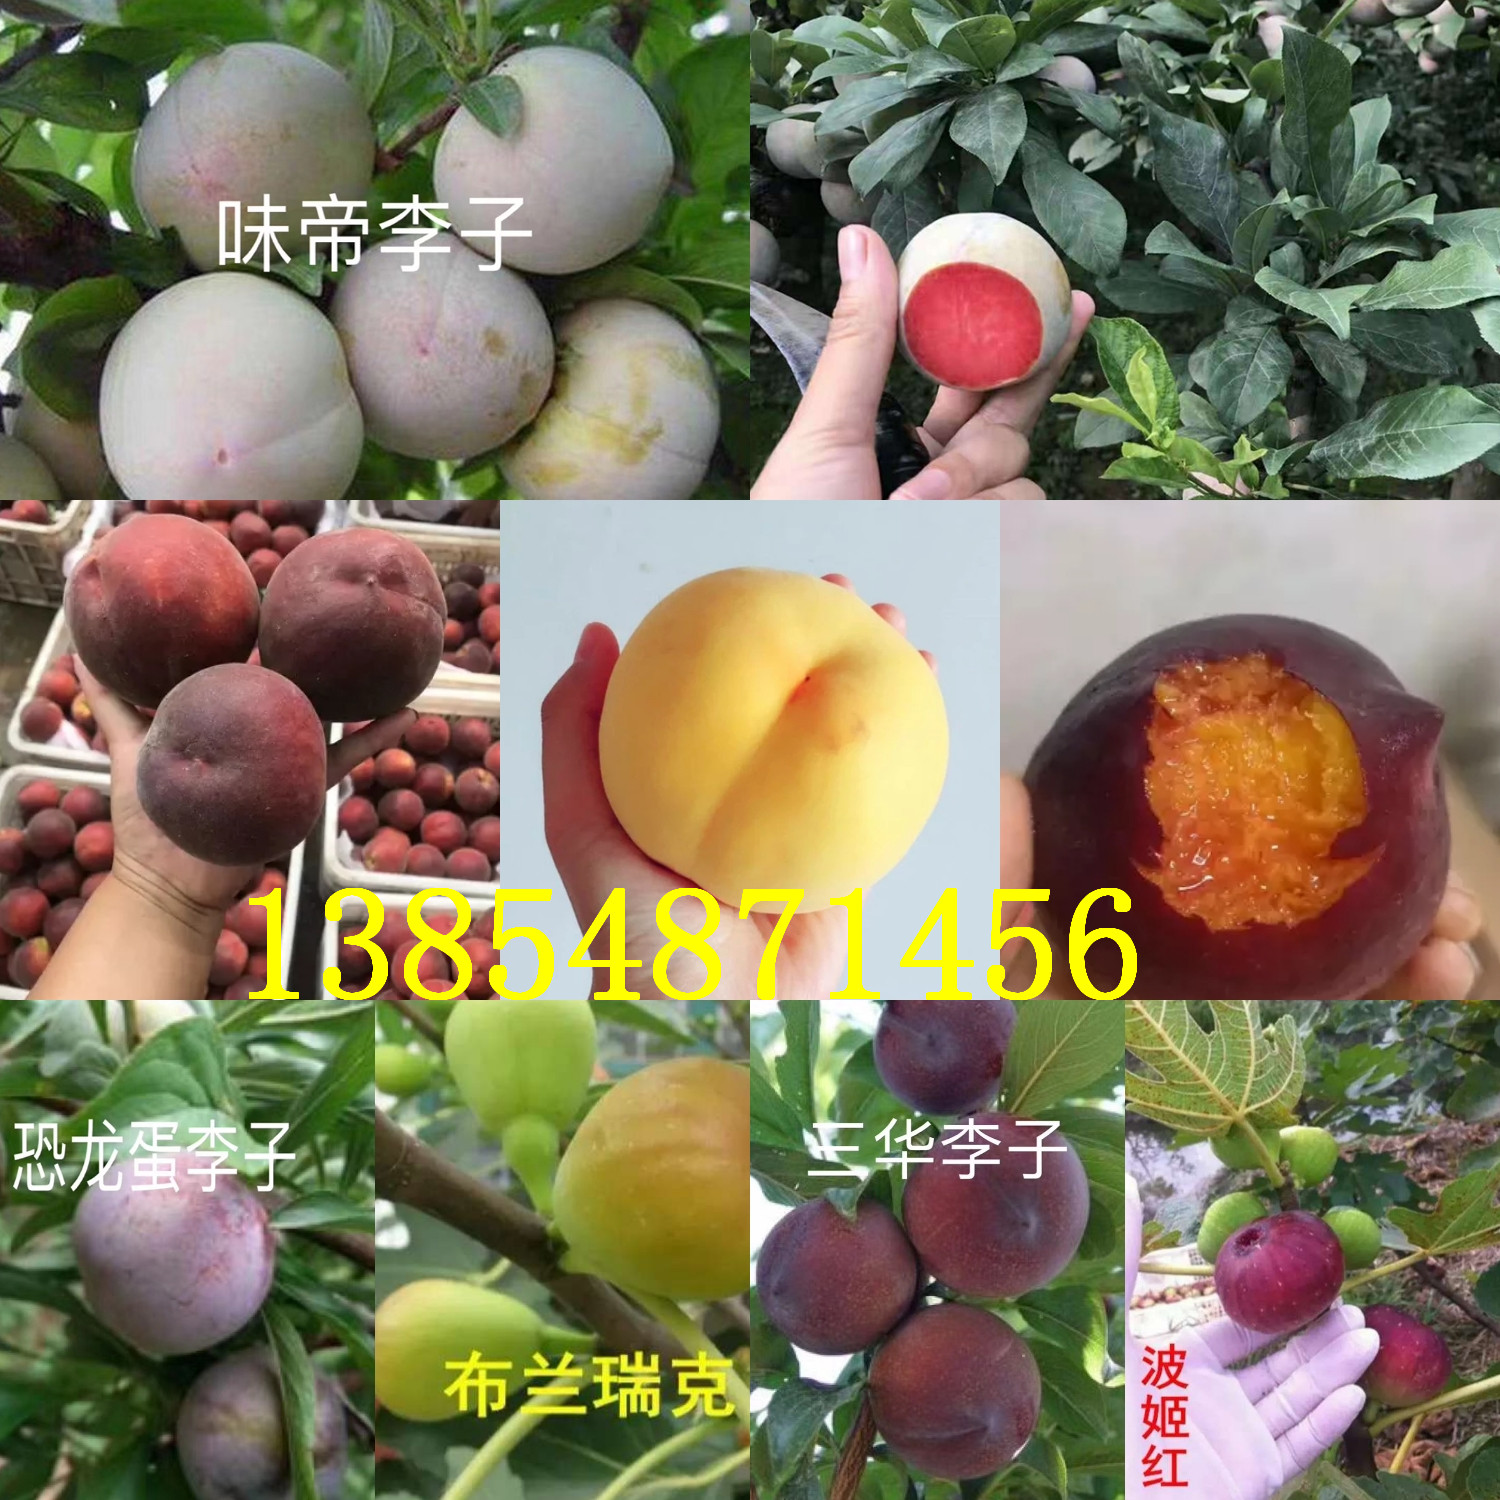 广东广州大棚香椿树苗基地卖啥价格、果树苗哪里有售